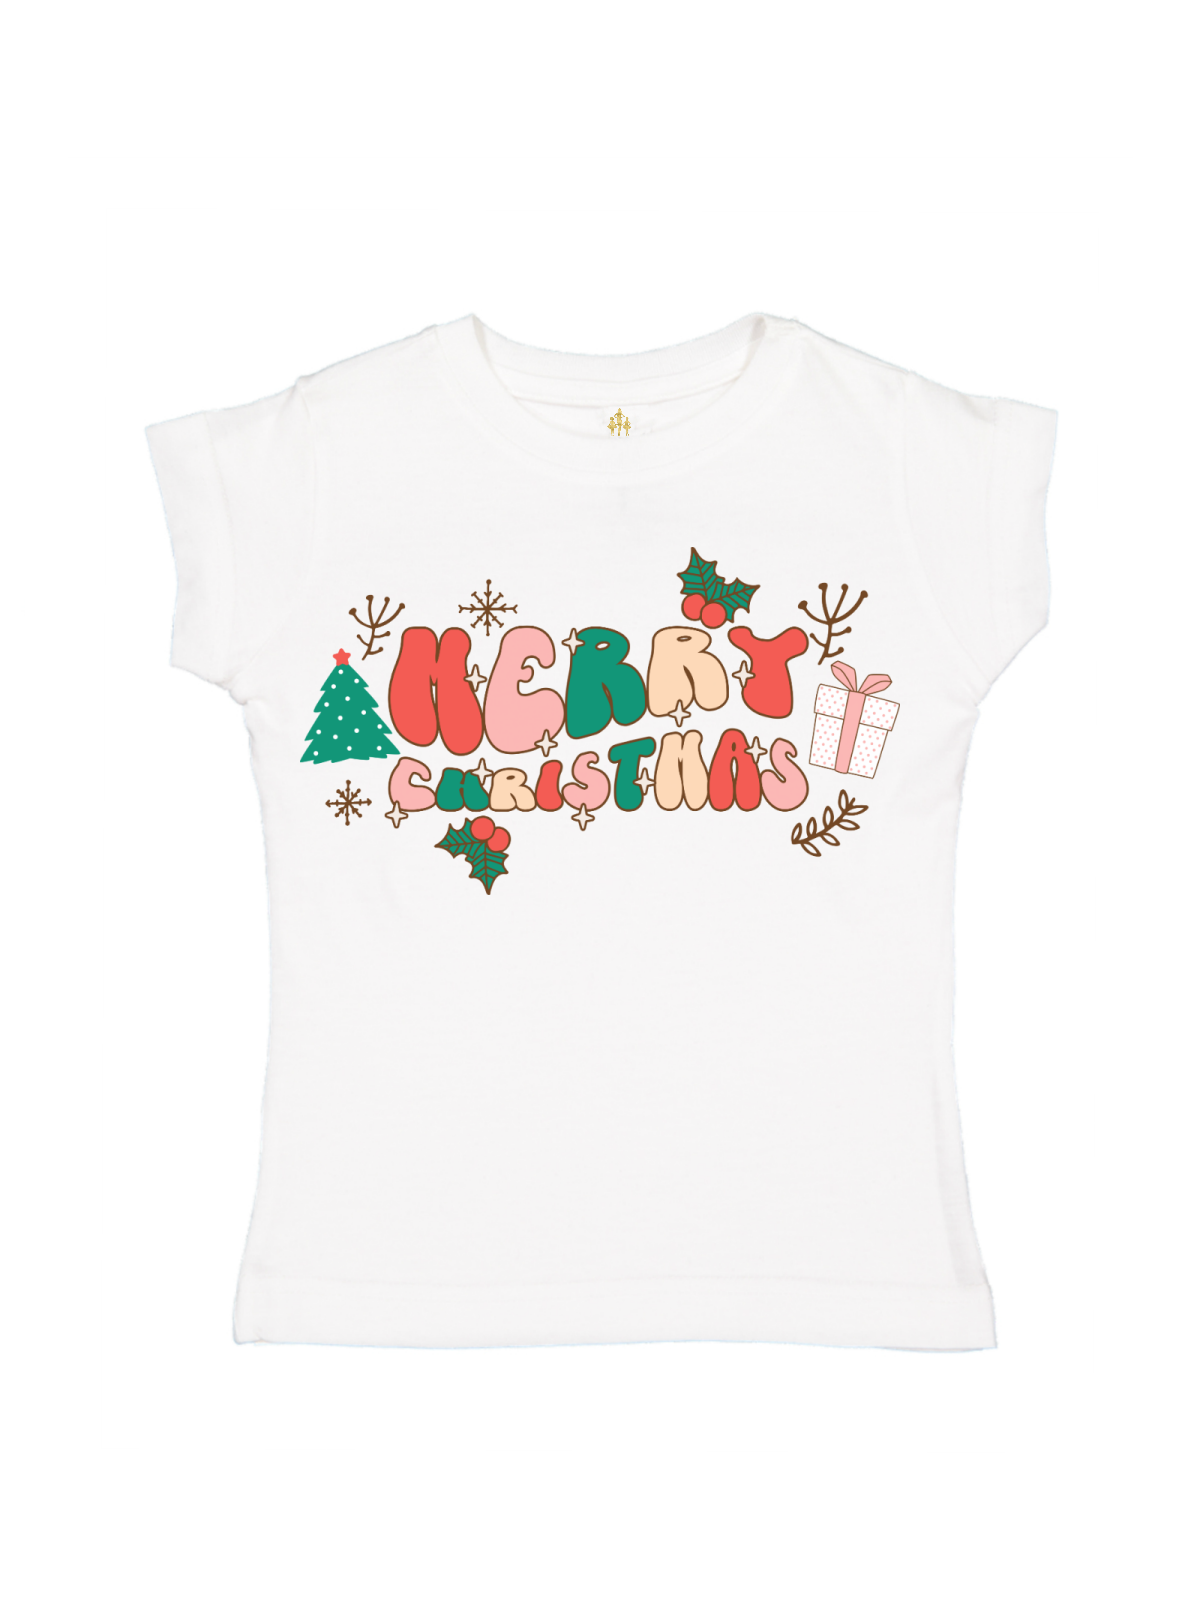 Merry Christmas Kids Retro Holiday TShirt